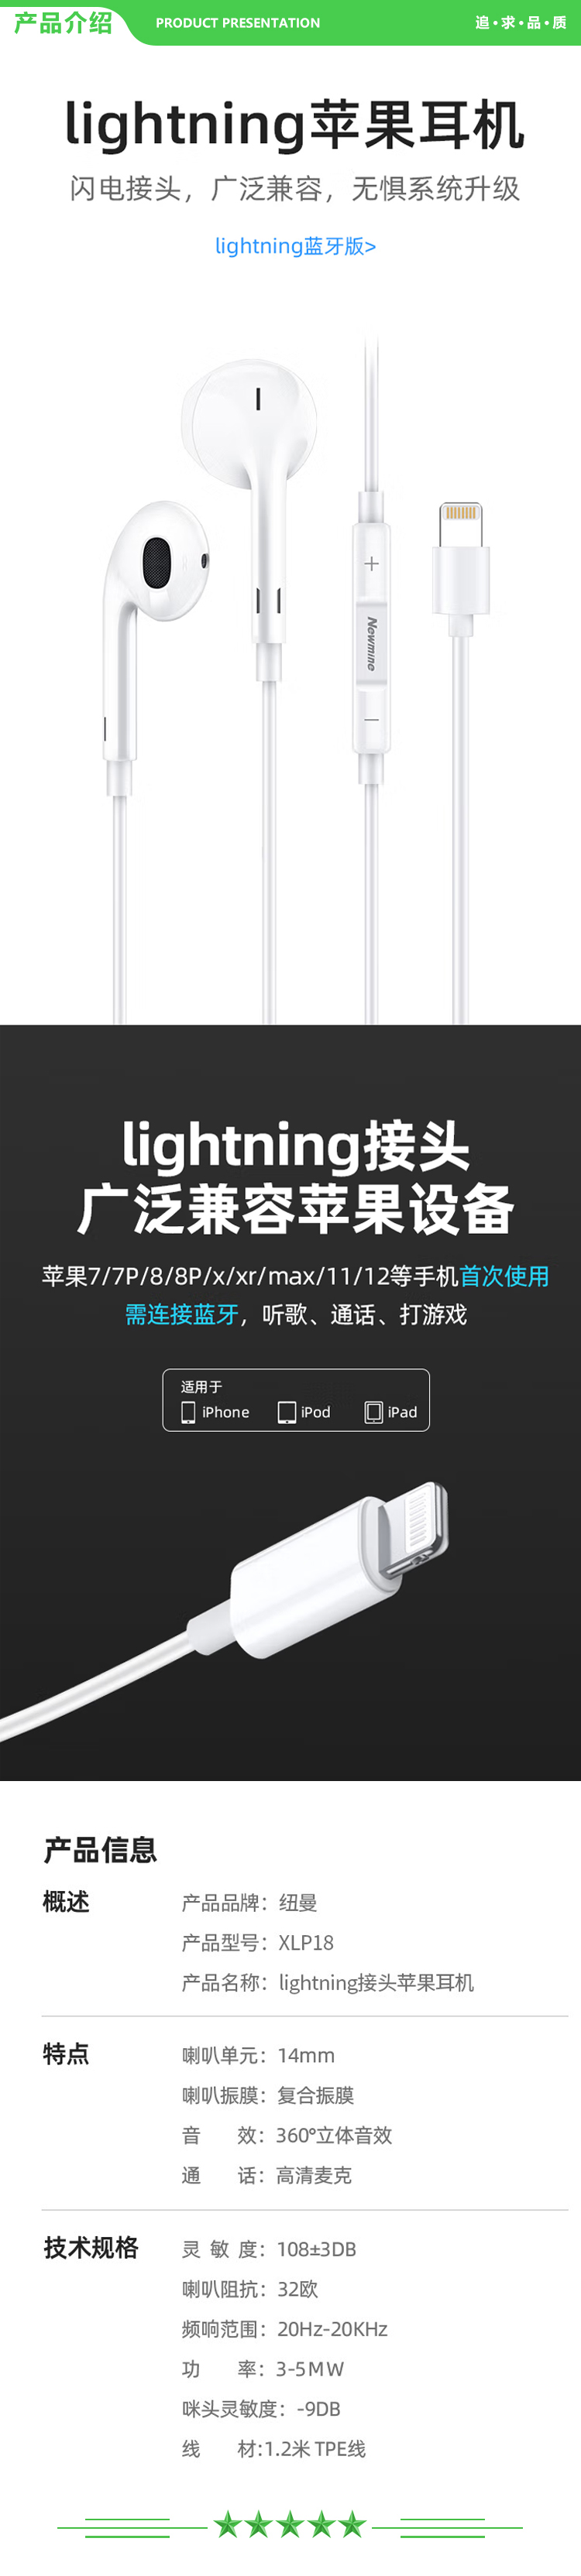 纽曼 Newmine XLP18 Lightning手机有线耳机闪电接头扁头半入耳式适用于苹果iPhone6s 7 8plus XS 11 12等 .jpg